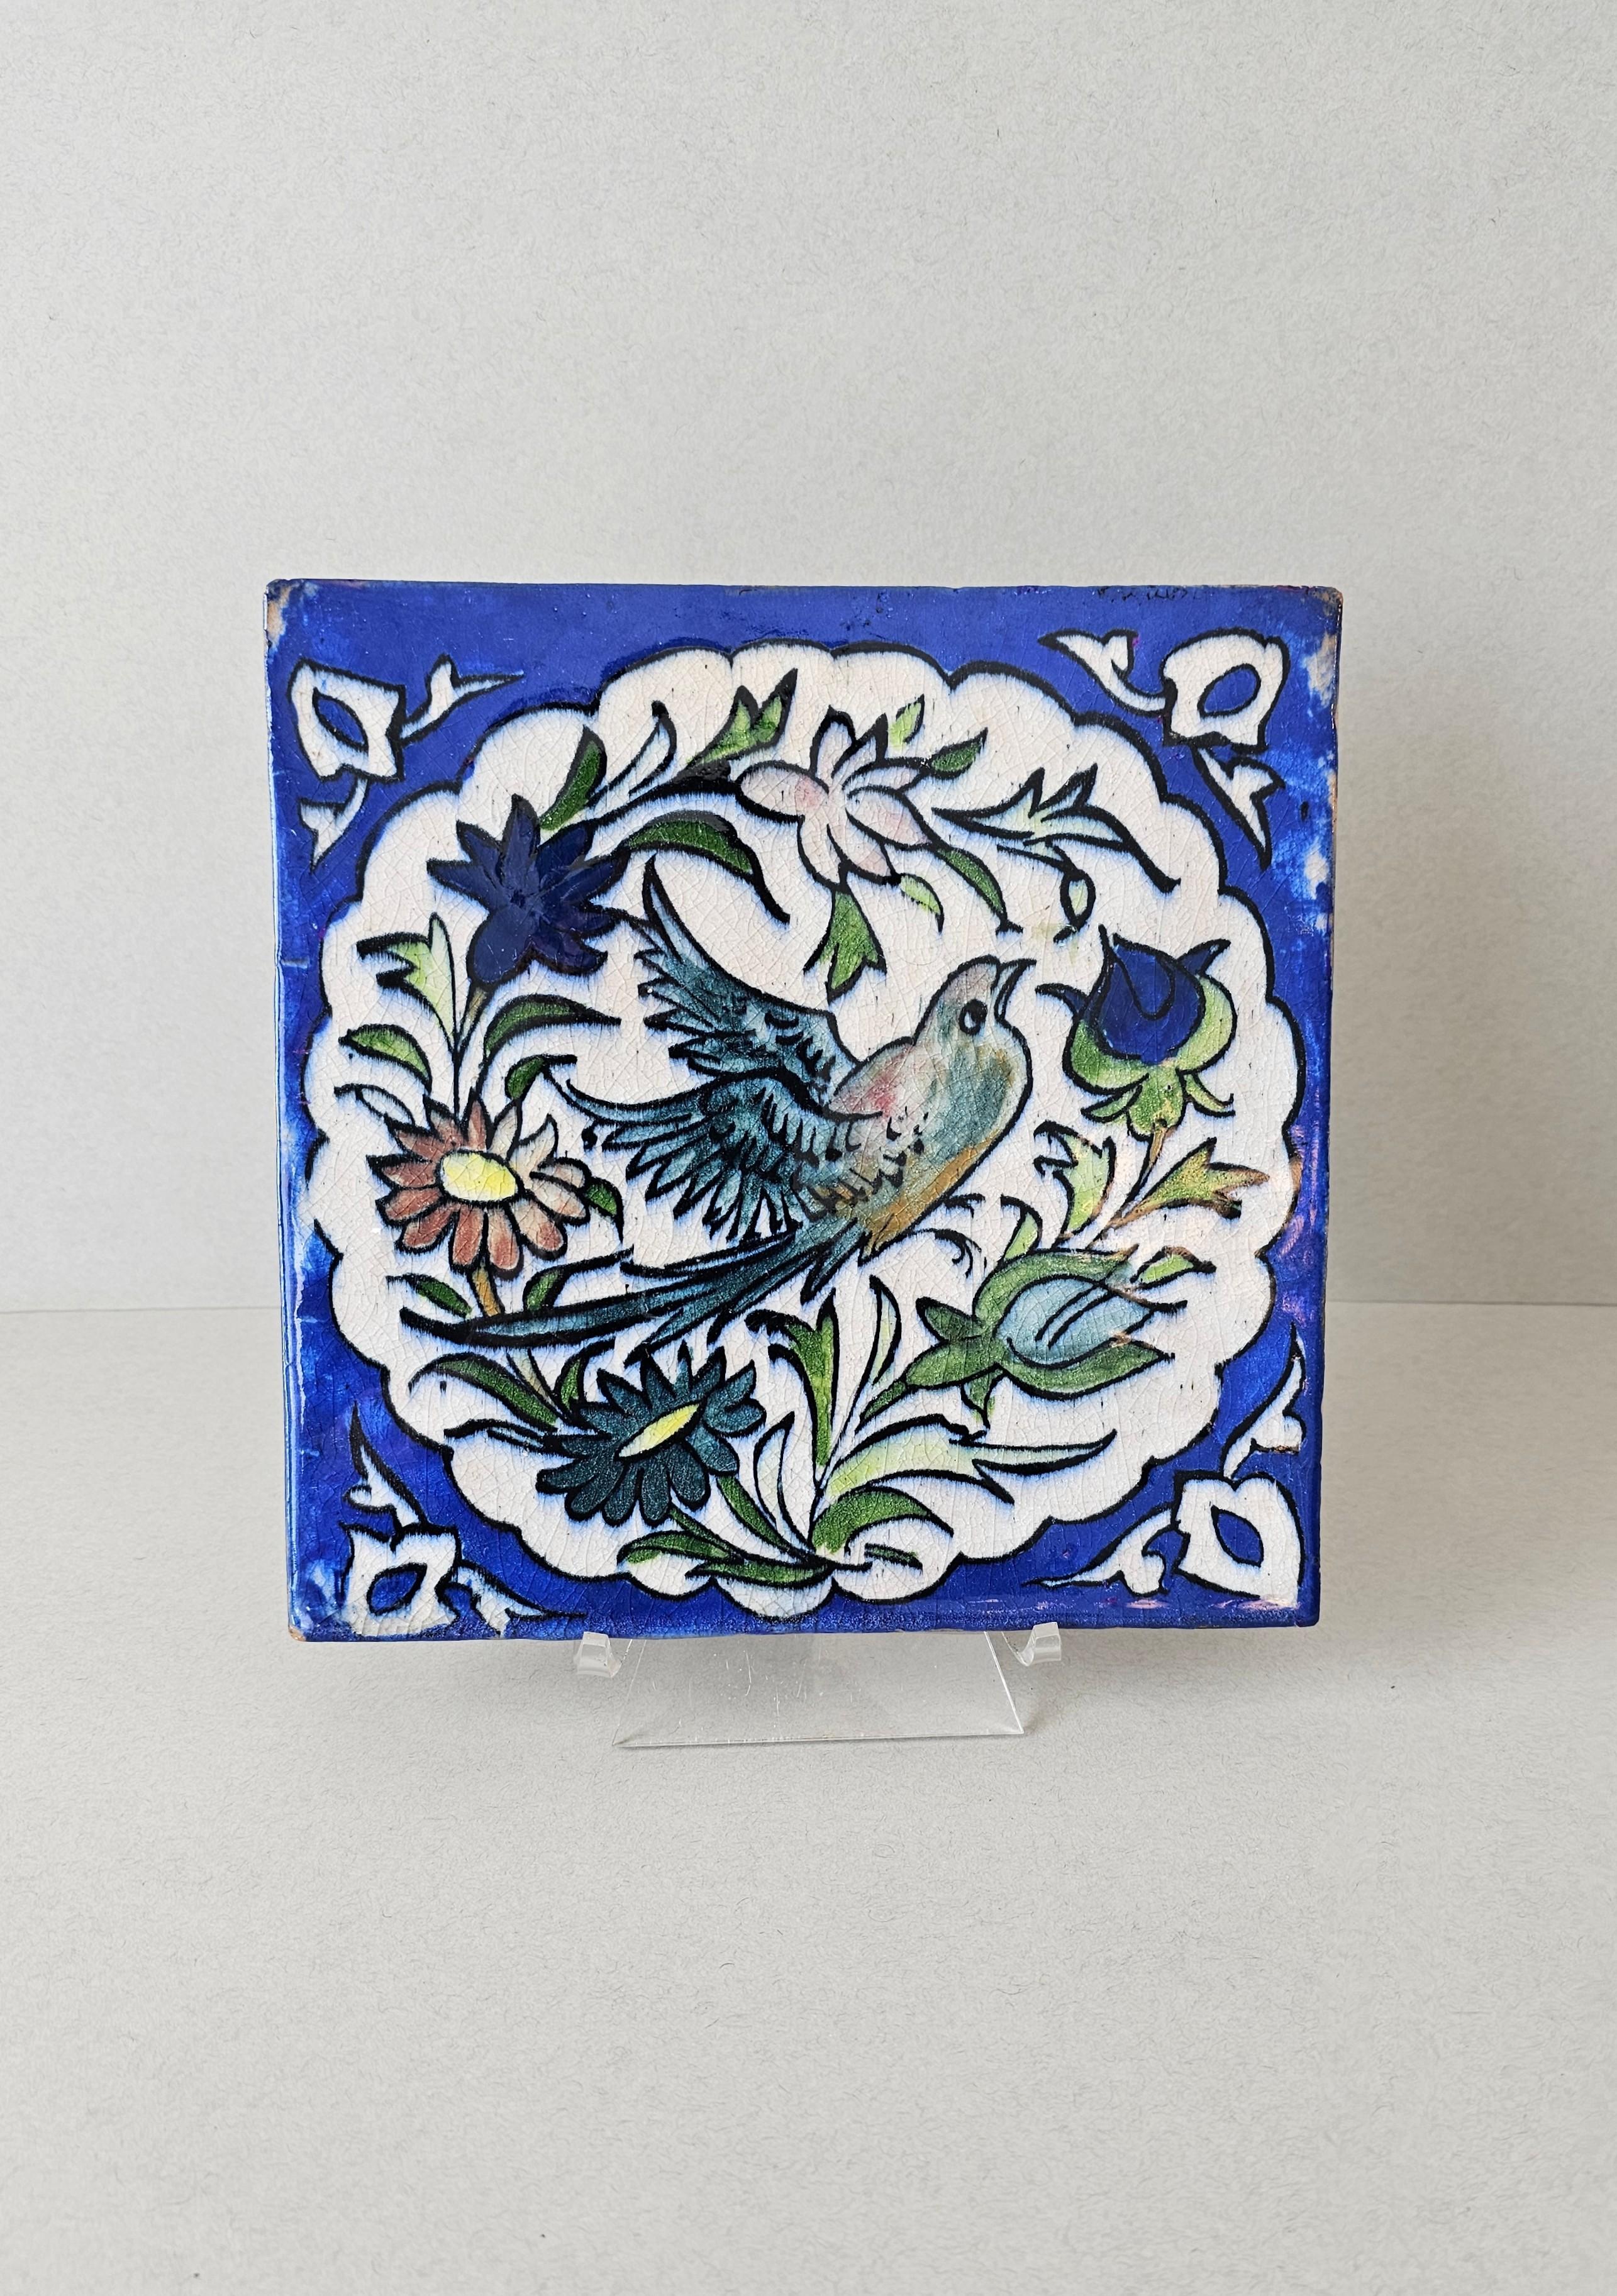 Exquisit handbemalte keramische Wandfliese, Persien, 19. Jahrhundert, antikes architektonisches Bauelement, wunderschönes farbiges Kunstwerk, das einen Vogel mit Blumen darstellt. 

Provenienz:
Aus dem Nachlass von Margaret 